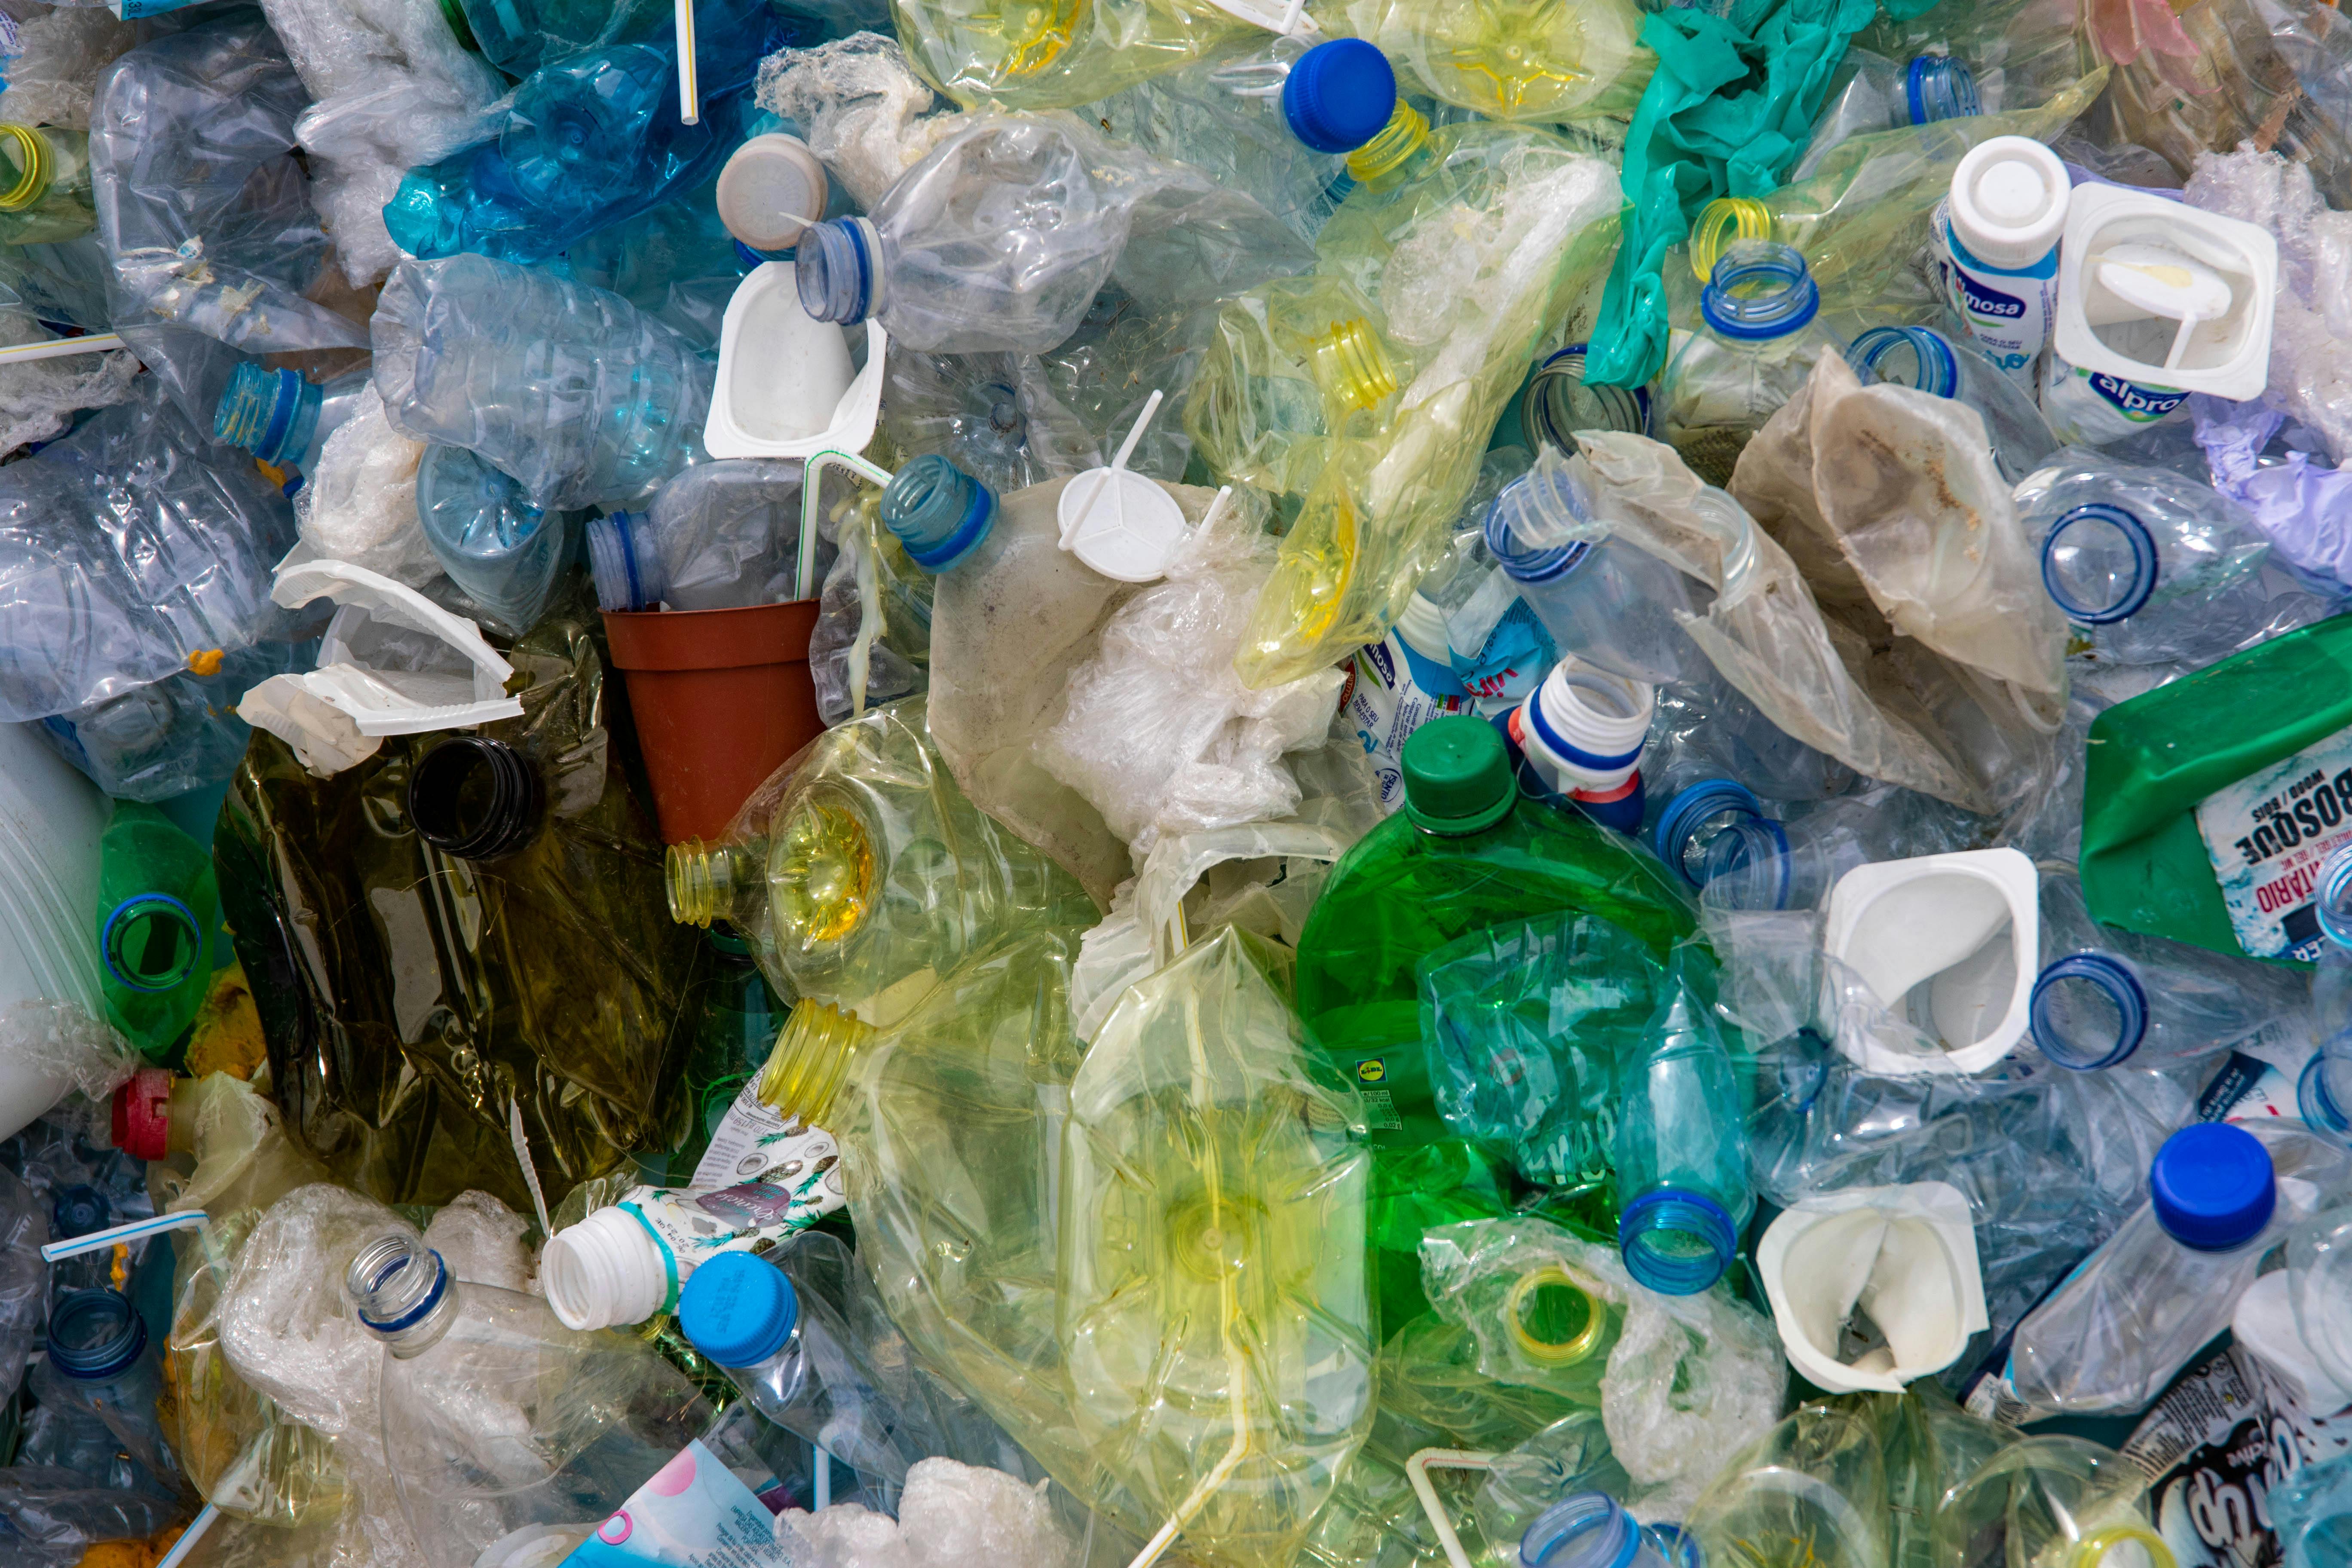 Nhựa dùng một lần: Tác hại vô tận đến môi trường và hệ sinh thái